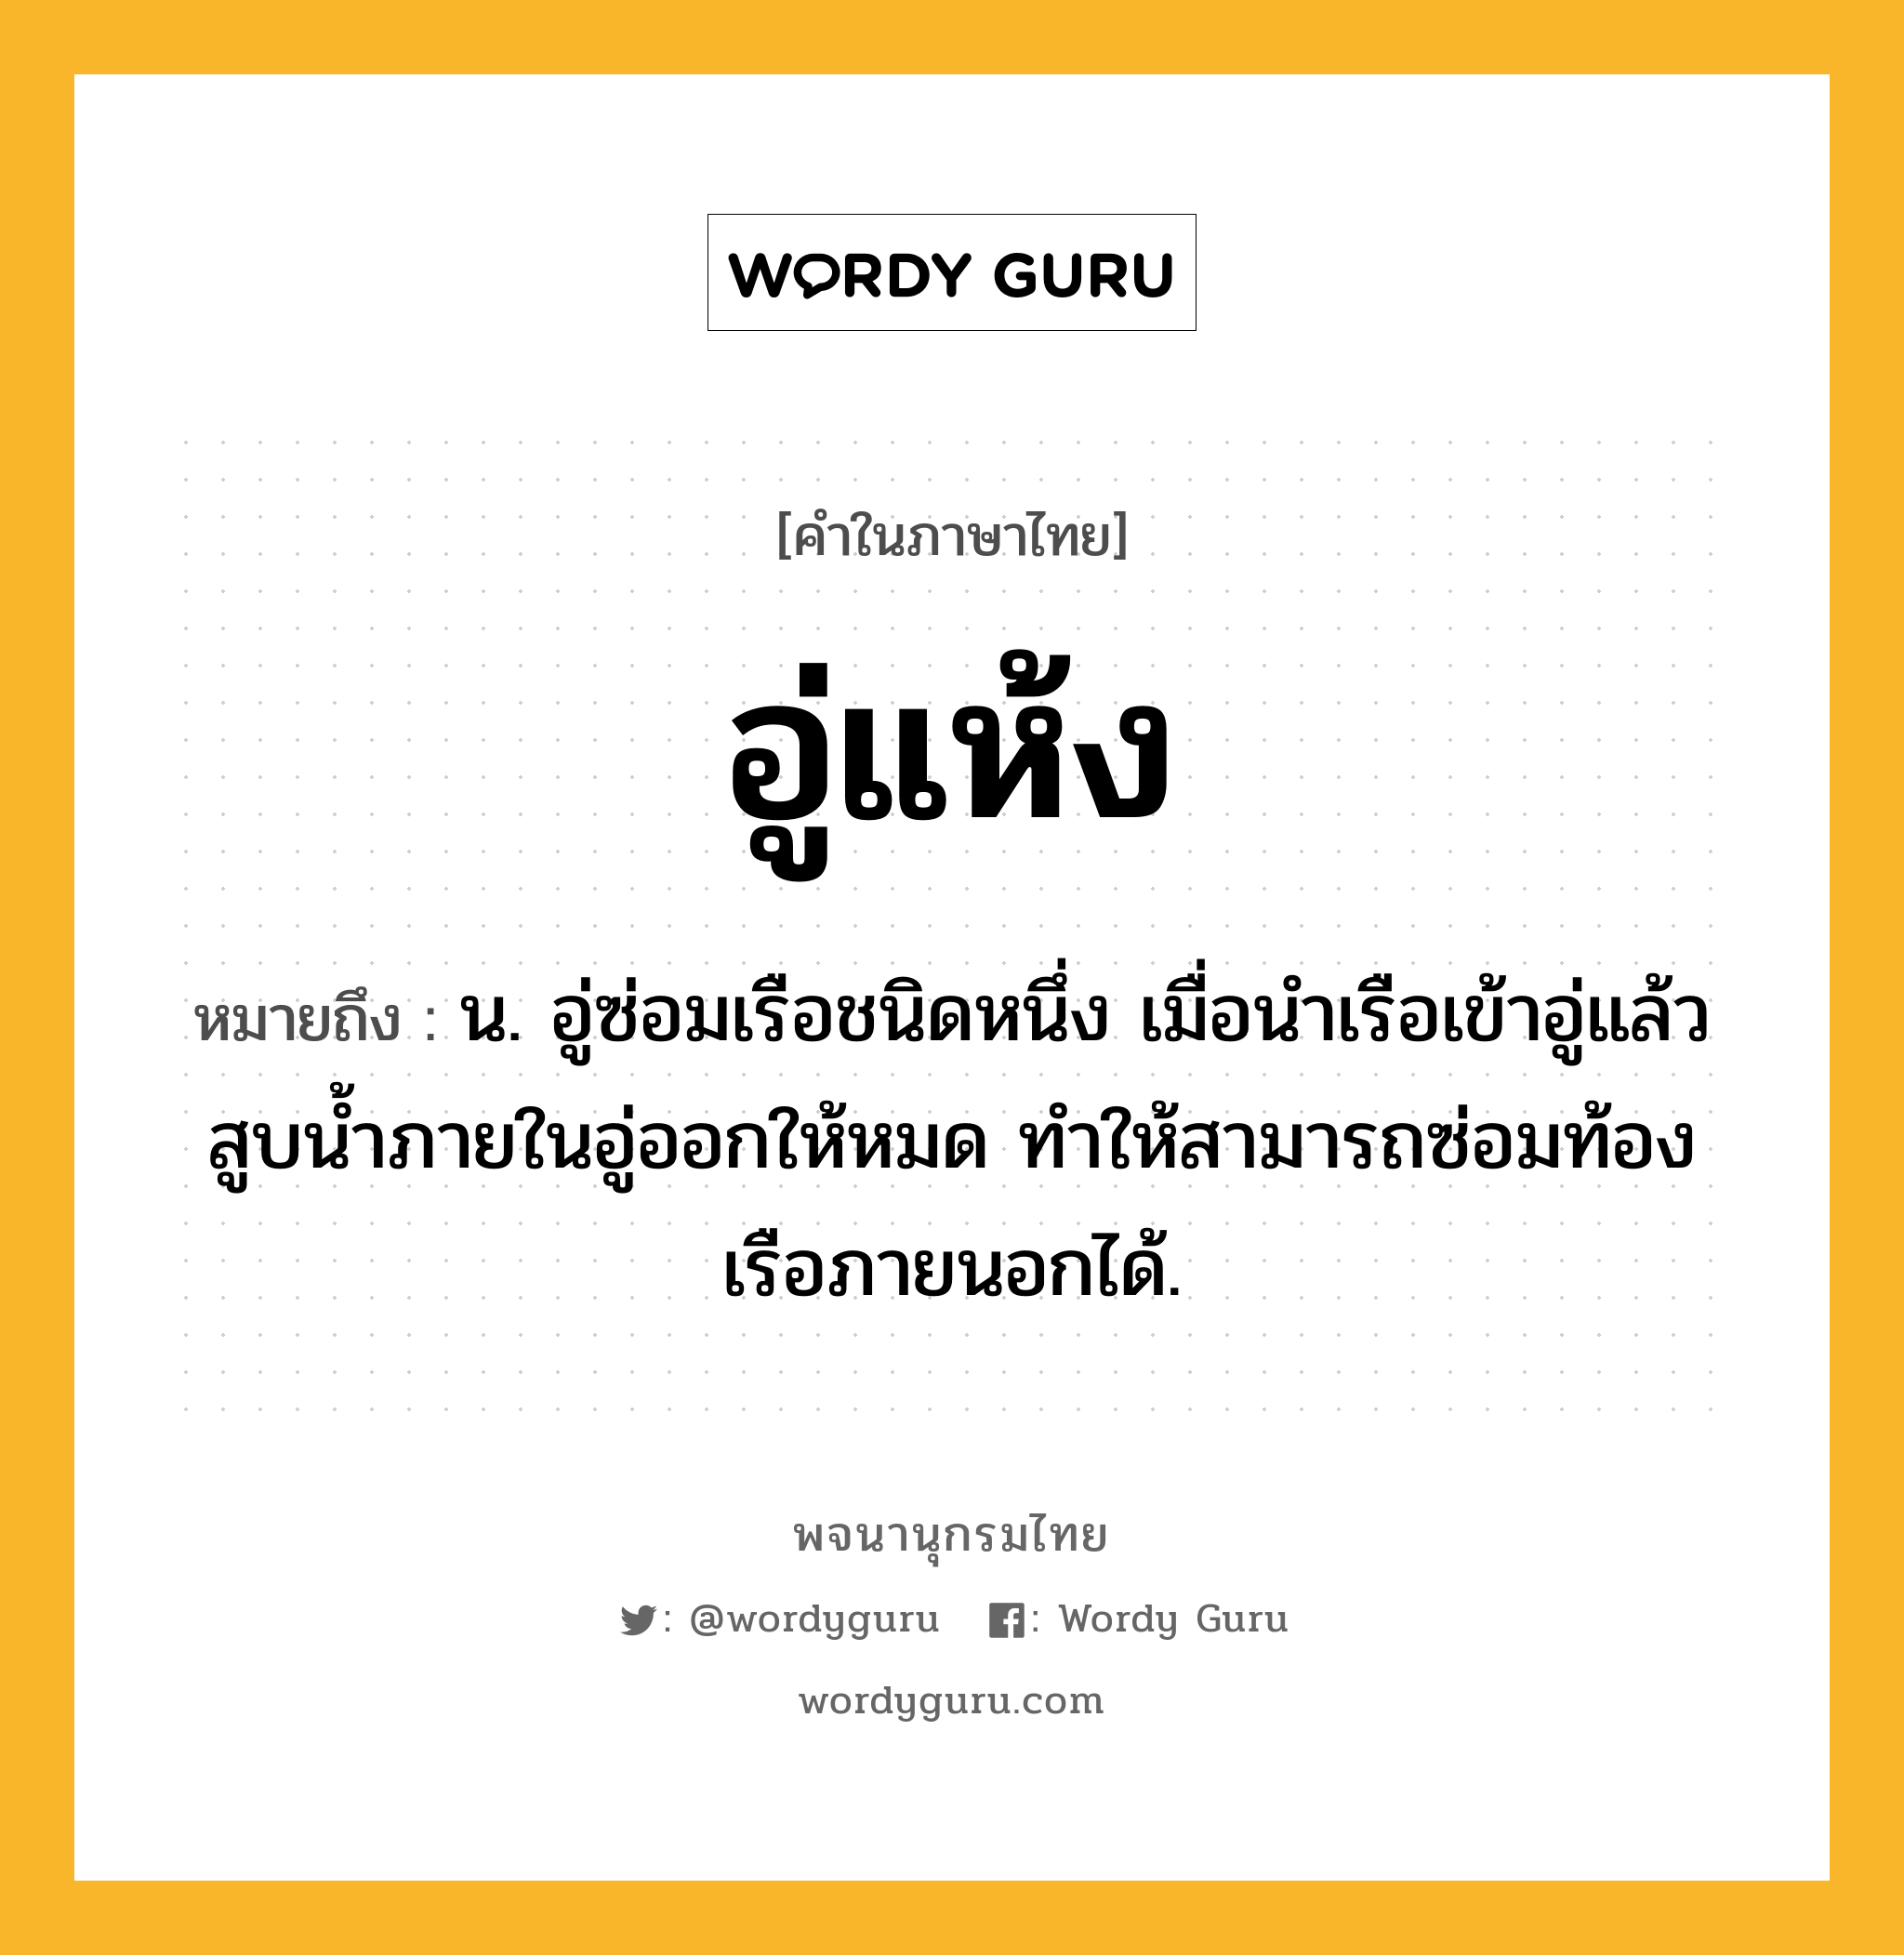 อู่แห้ง ความหมาย หมายถึงอะไร?, คำในภาษาไทย อู่แห้ง หมายถึง น. อู่ซ่อมเรือชนิดหนึ่ง เมื่อนําเรือเข้าอู่แล้ว สูบนํ้าภายในอู่ออกให้หมด ทําให้สามารถซ่อมท้องเรือภายนอกได้.